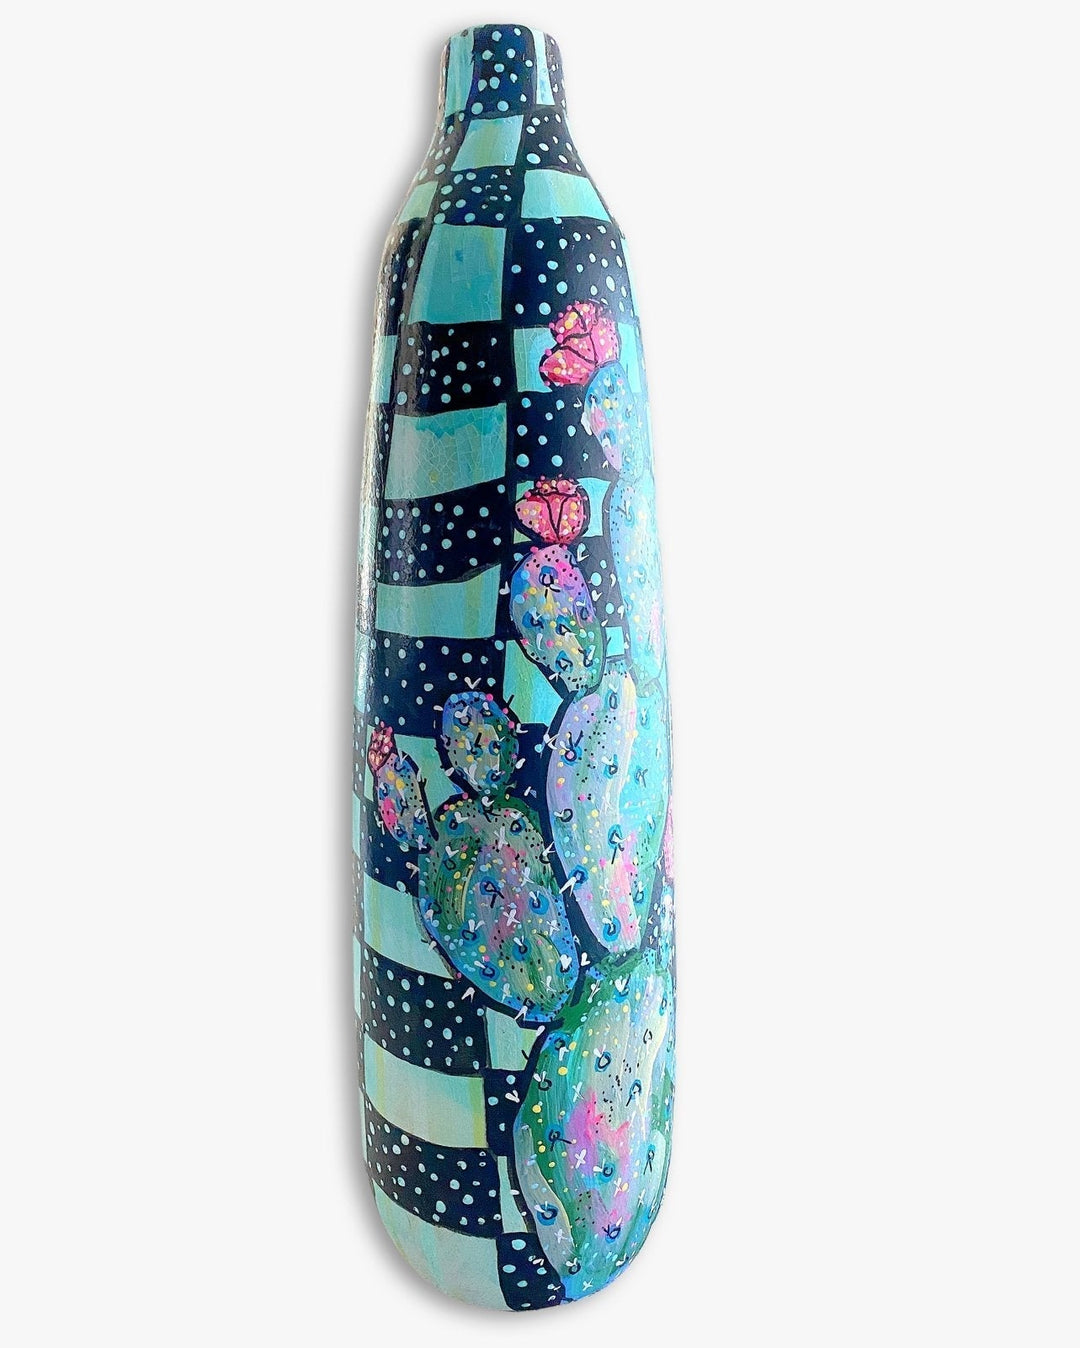 Prickly Pear Blues XL Vase - Heather Freitas 